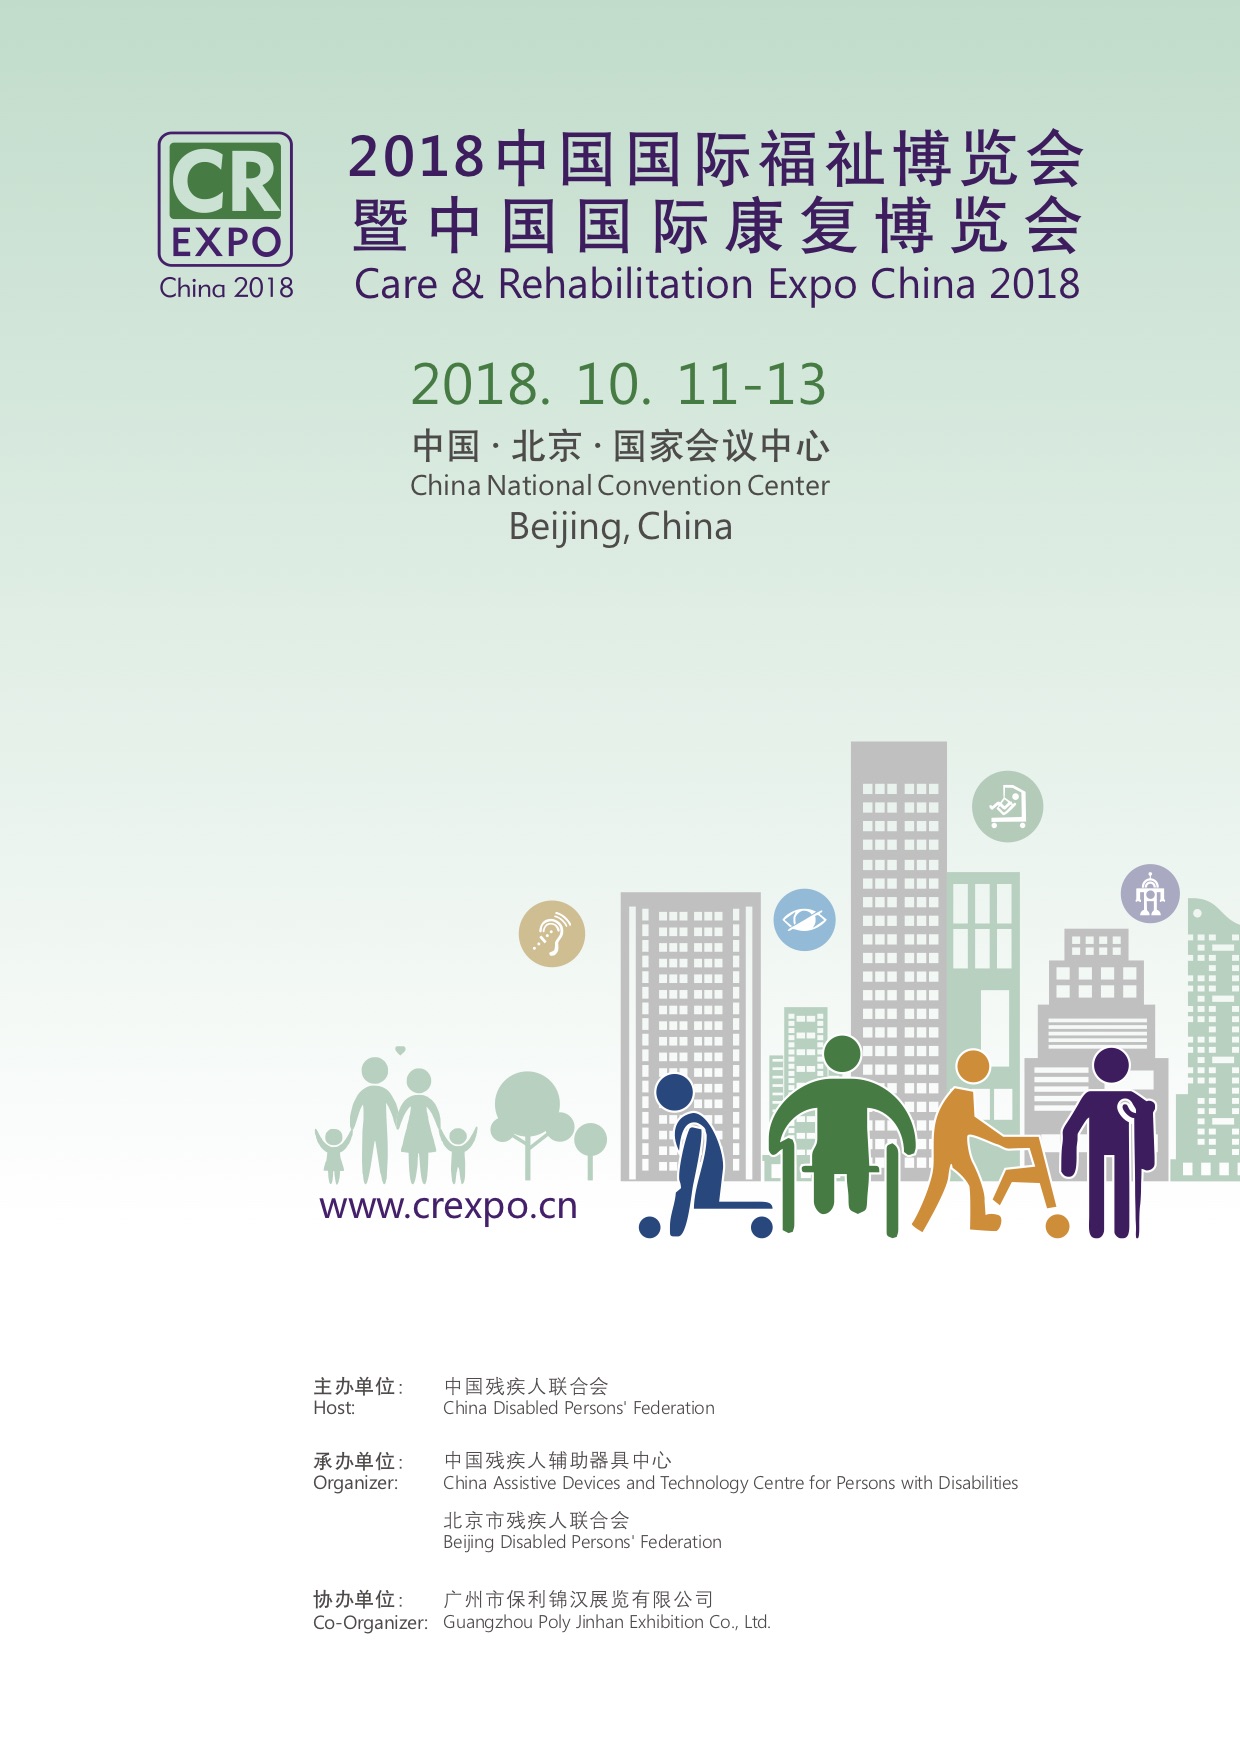 2018中國國際福祉博覽會暨中國國際康復博覽會